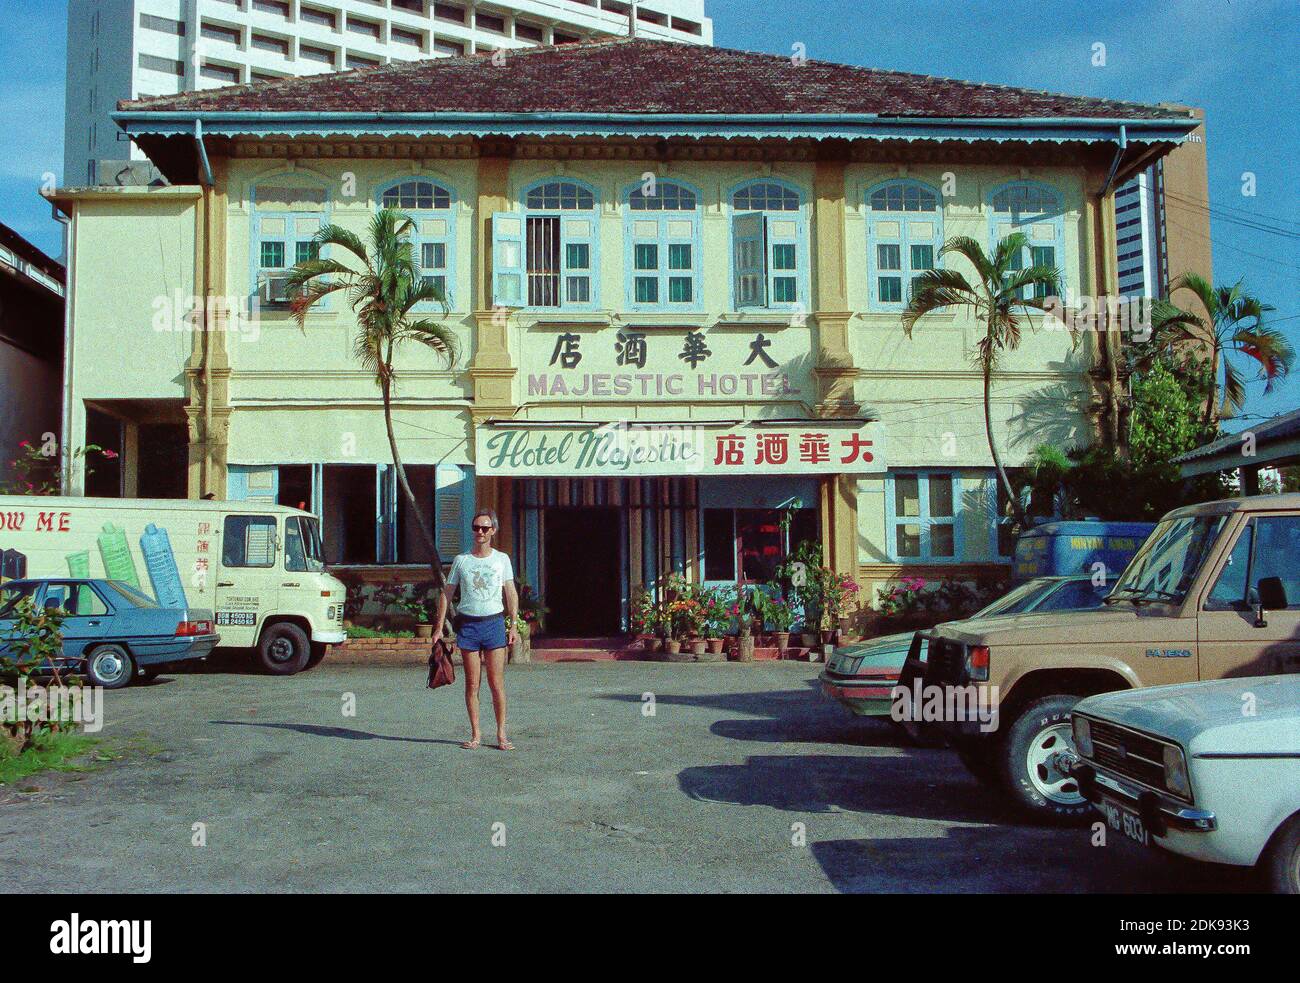 Majestic Hotel, Malacca (Melaka), Malesia nel 1990, era degli anni '20, a quel tempo ancora un hotel economico vecchio mondo a gestione cinese. Ora completamente ristrutturato come hotel di lusso a 5 stelle. Foto Stock